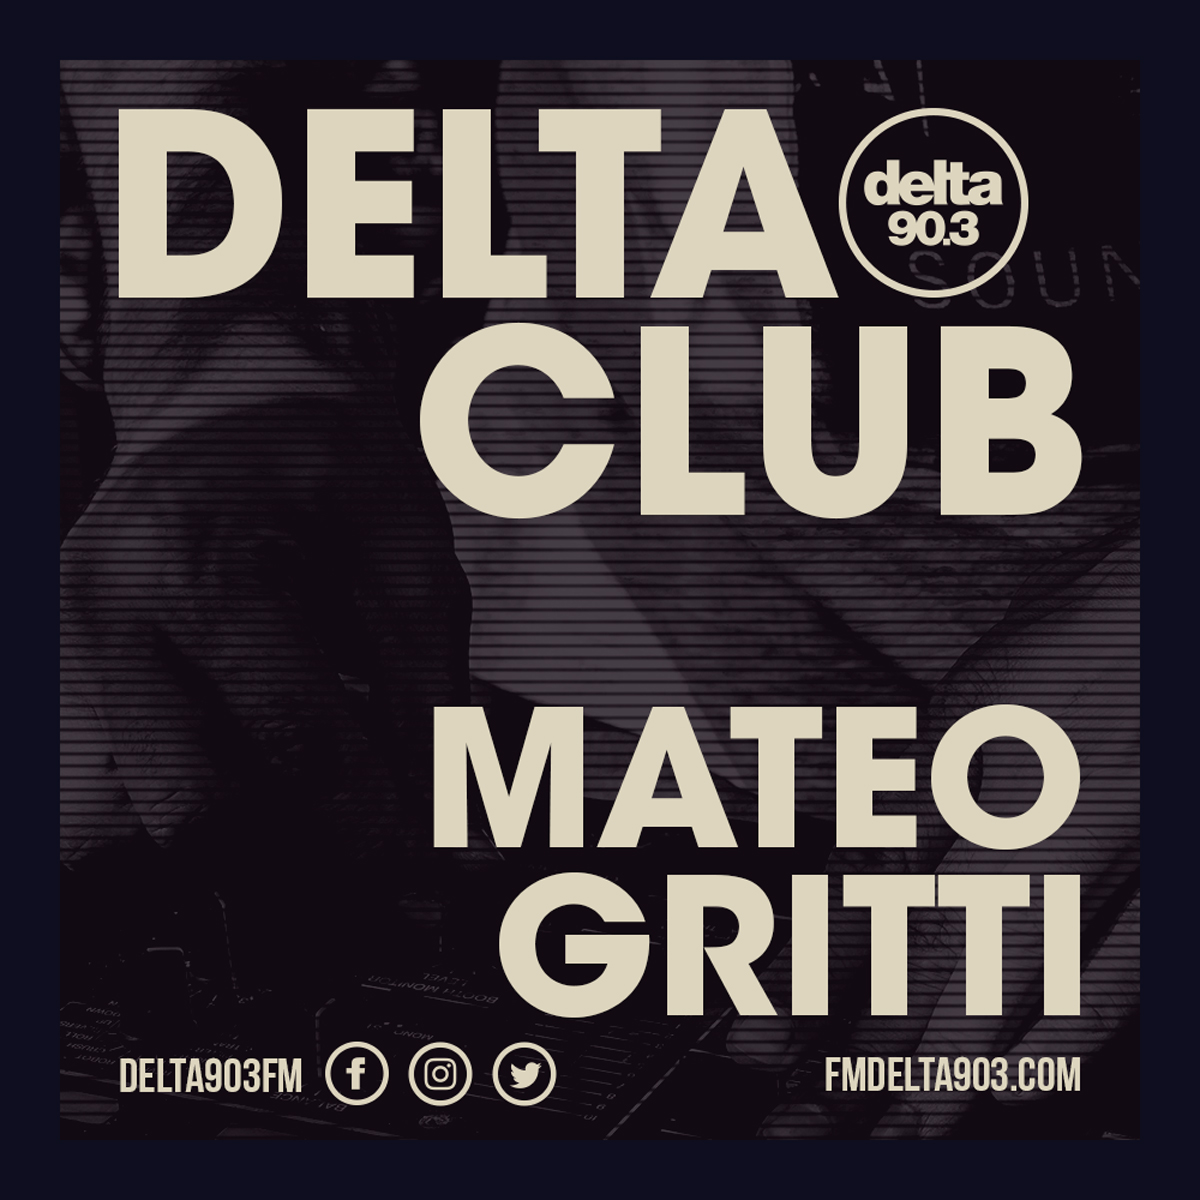 Delta Podcasts - Delta Club presents Mateo Gritti (24.04.2018)